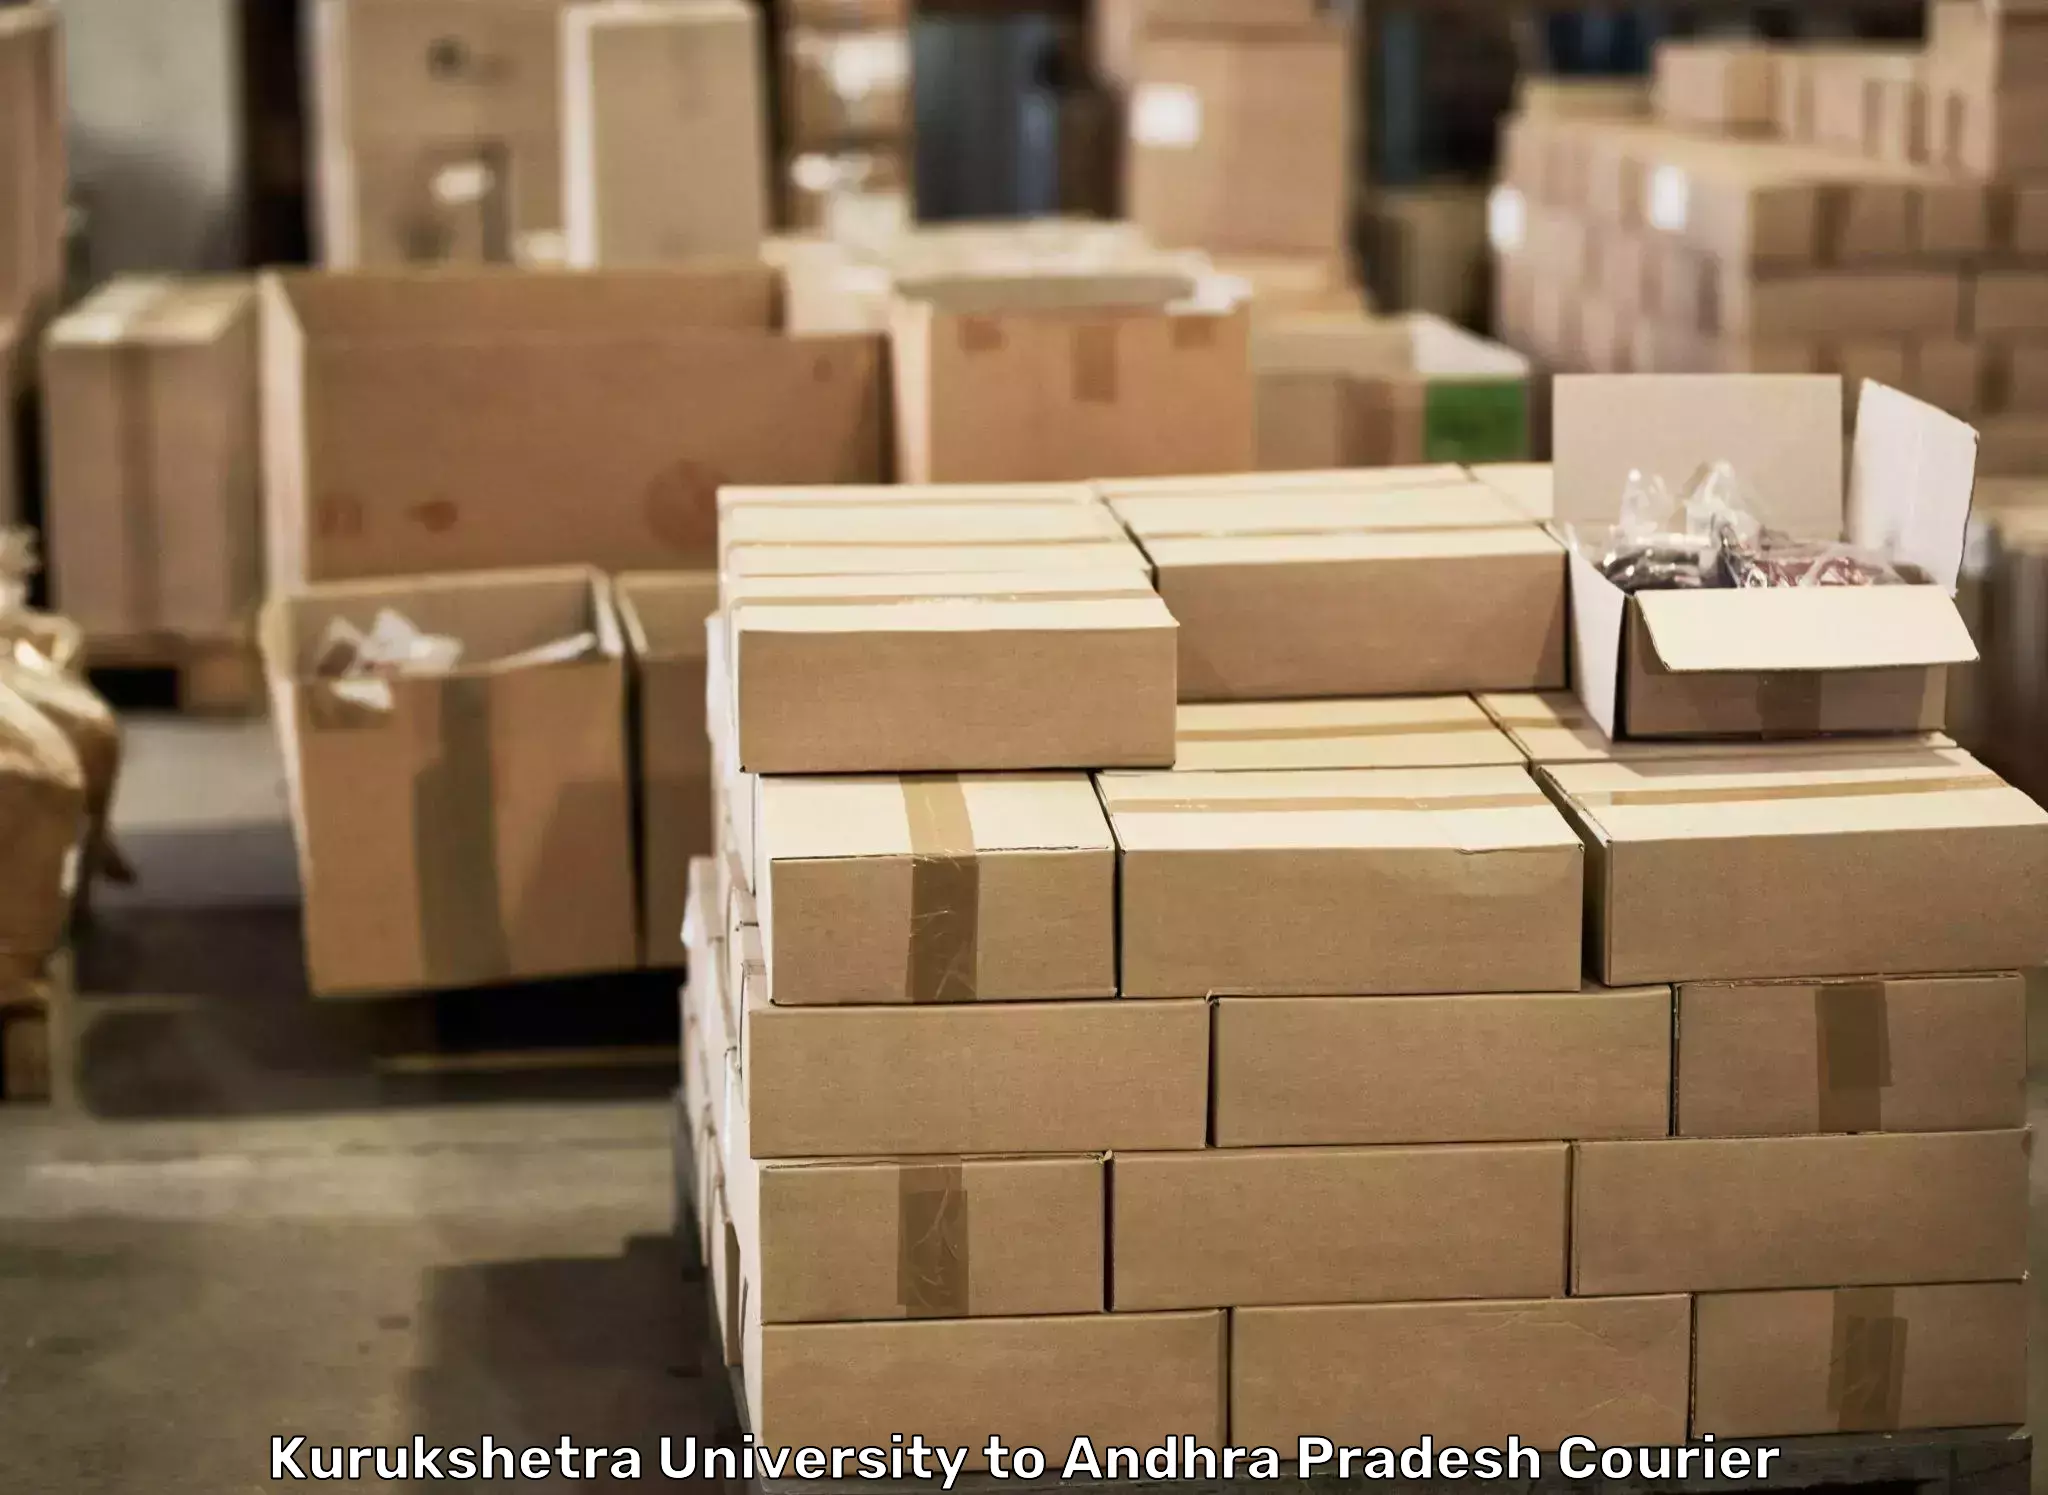 Door-to-door relocation services Kurukshetra University to Chodavaram